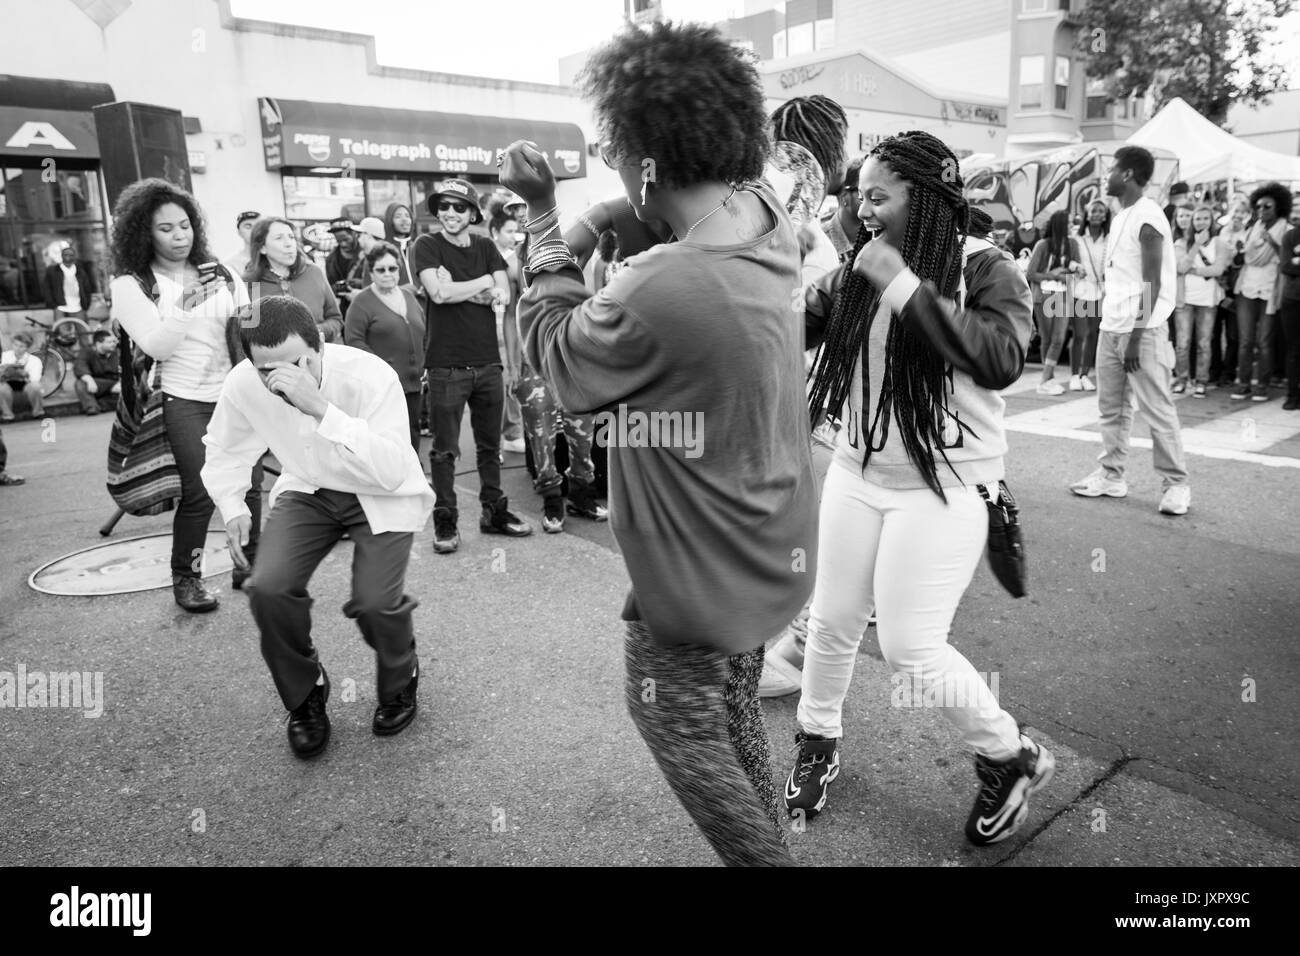 OAKLAND, CA - Aug 6, 2014 : Les gens danser dans la rue au cours de l'Art Galerie hop mensuel murmure. Foule diversifiée d'artistes et les gens branchés. Monochrome. Banque D'Images